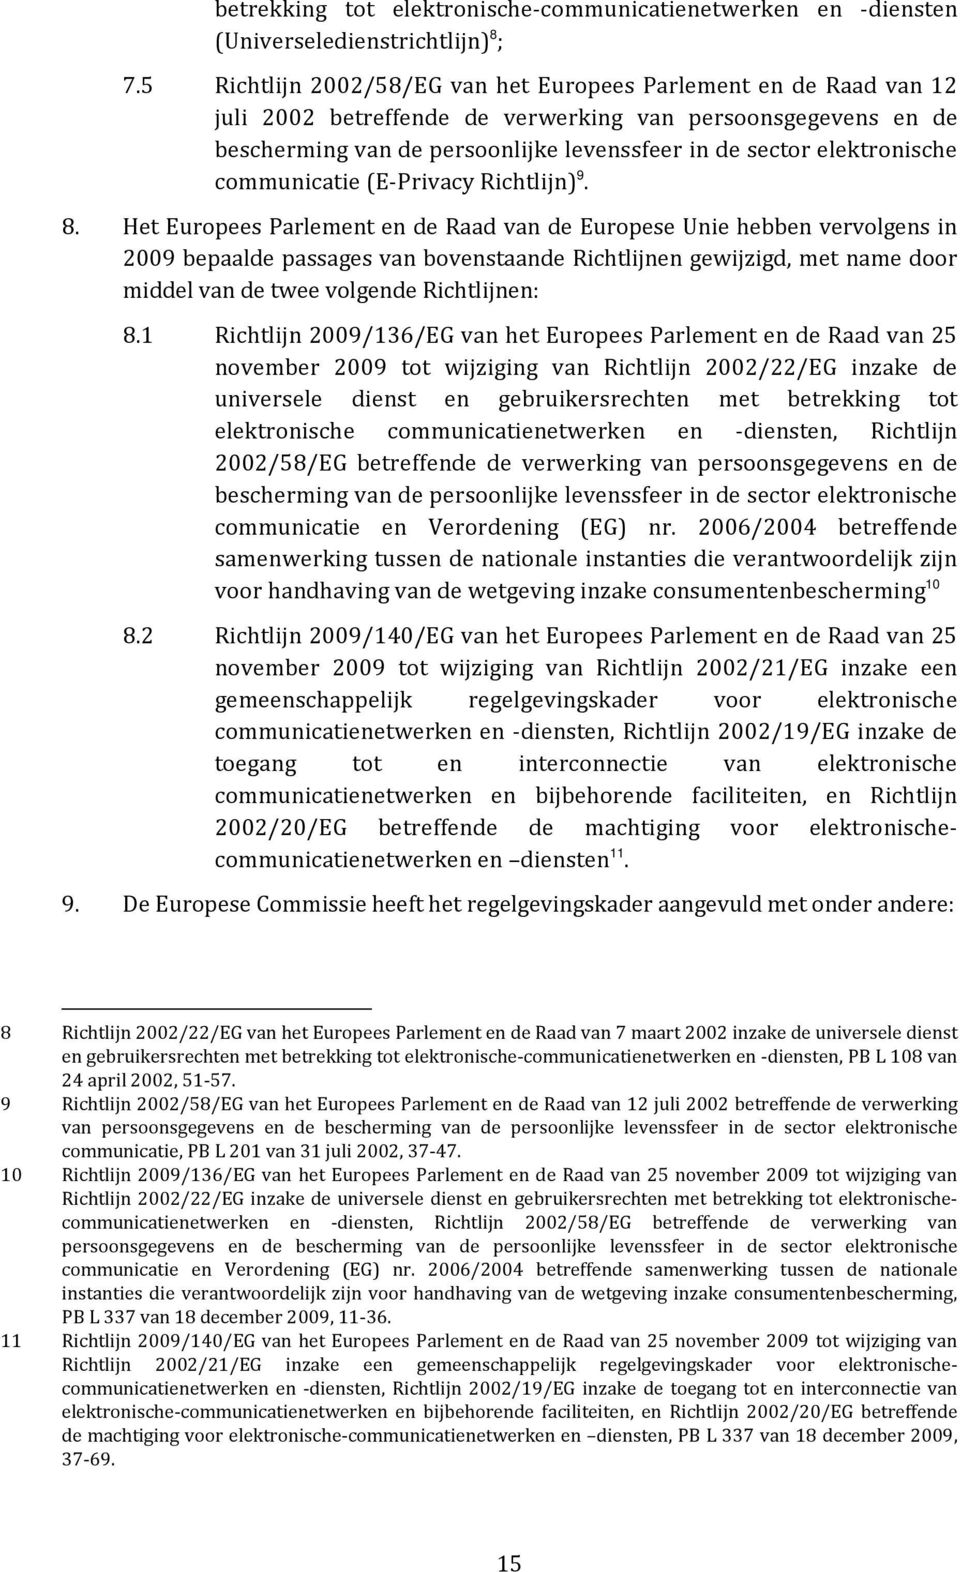 Het Europees Parlement en de Raad van de Europese Unie hebben vervolgens in 2009 bepaalde passages van bovenstaande Richtlijnen gewijzigd, met name door middel van de twee volgende Richtlijnen: 8.1 8.